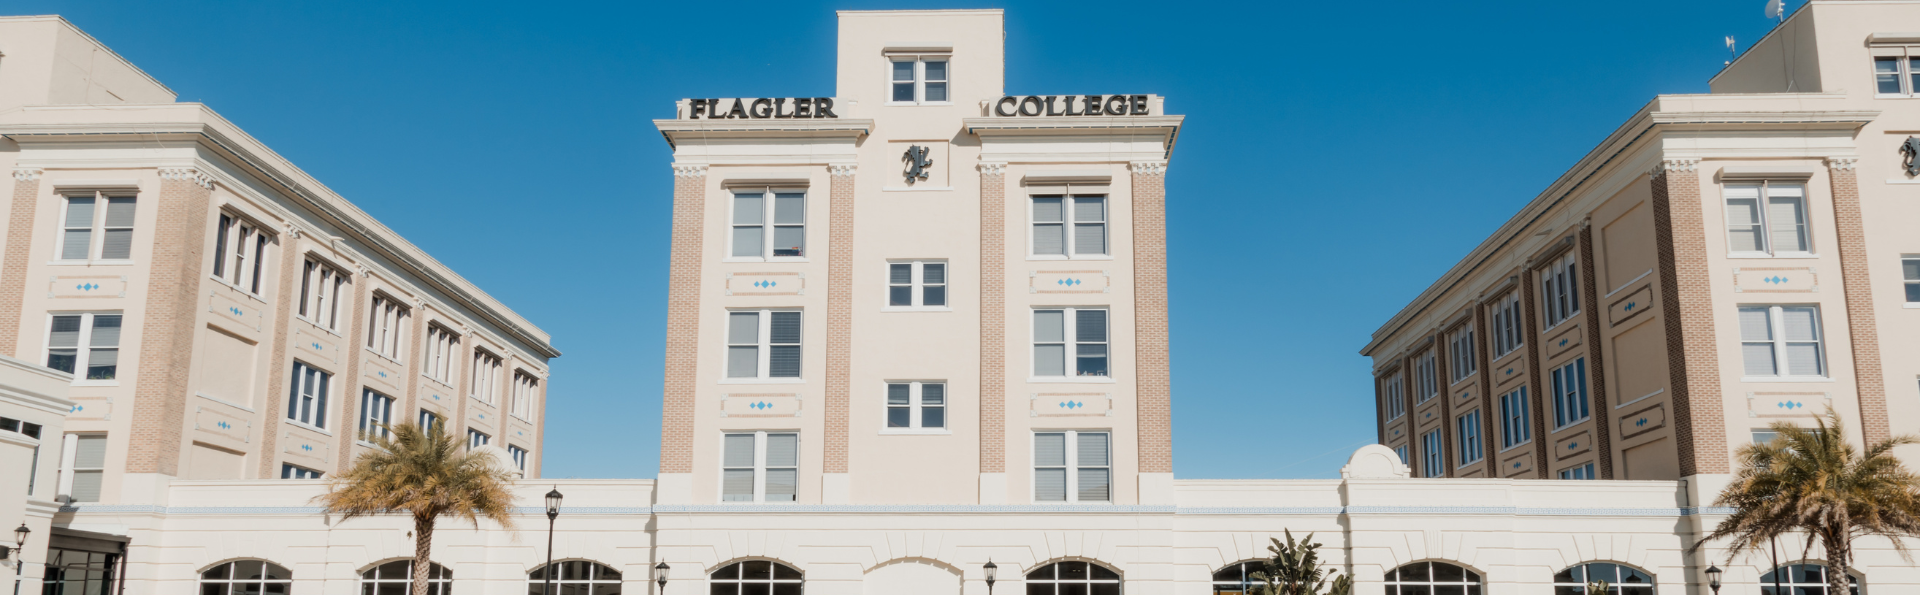 Flagler College building.